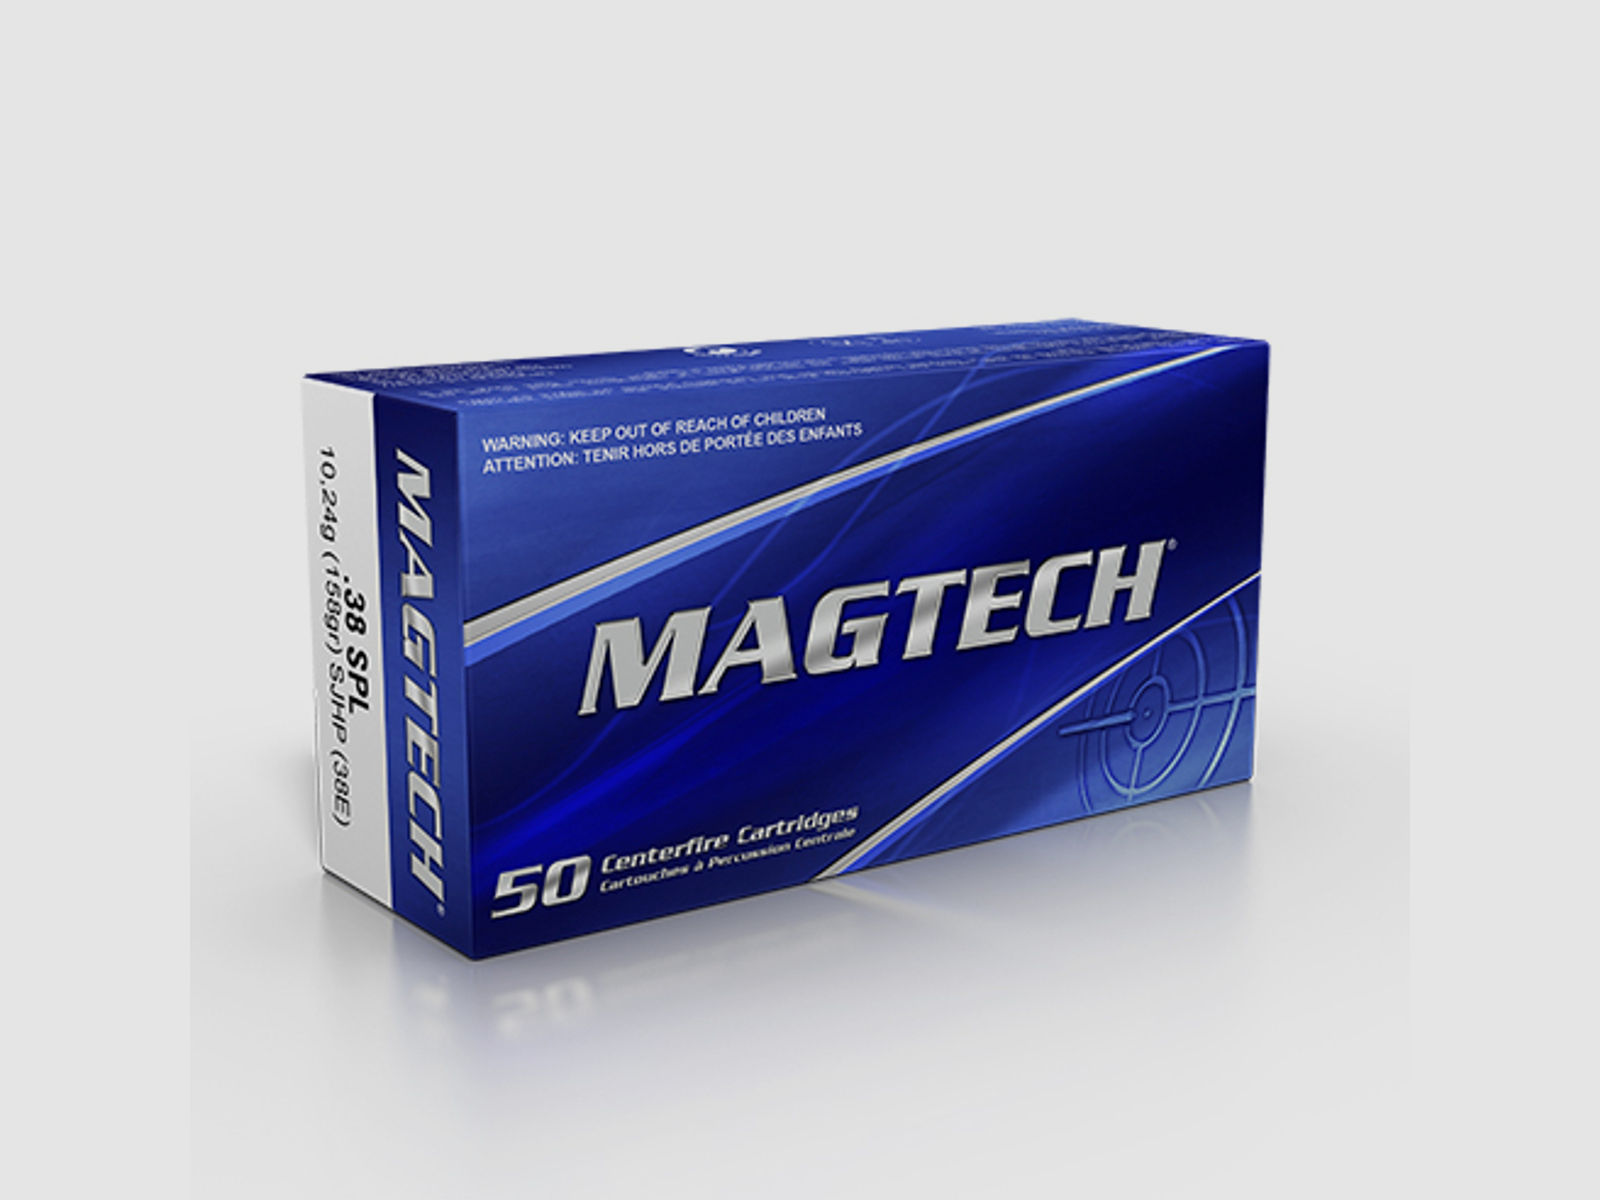 Magtech .38 Special 158GR SJHP 50 Patronen